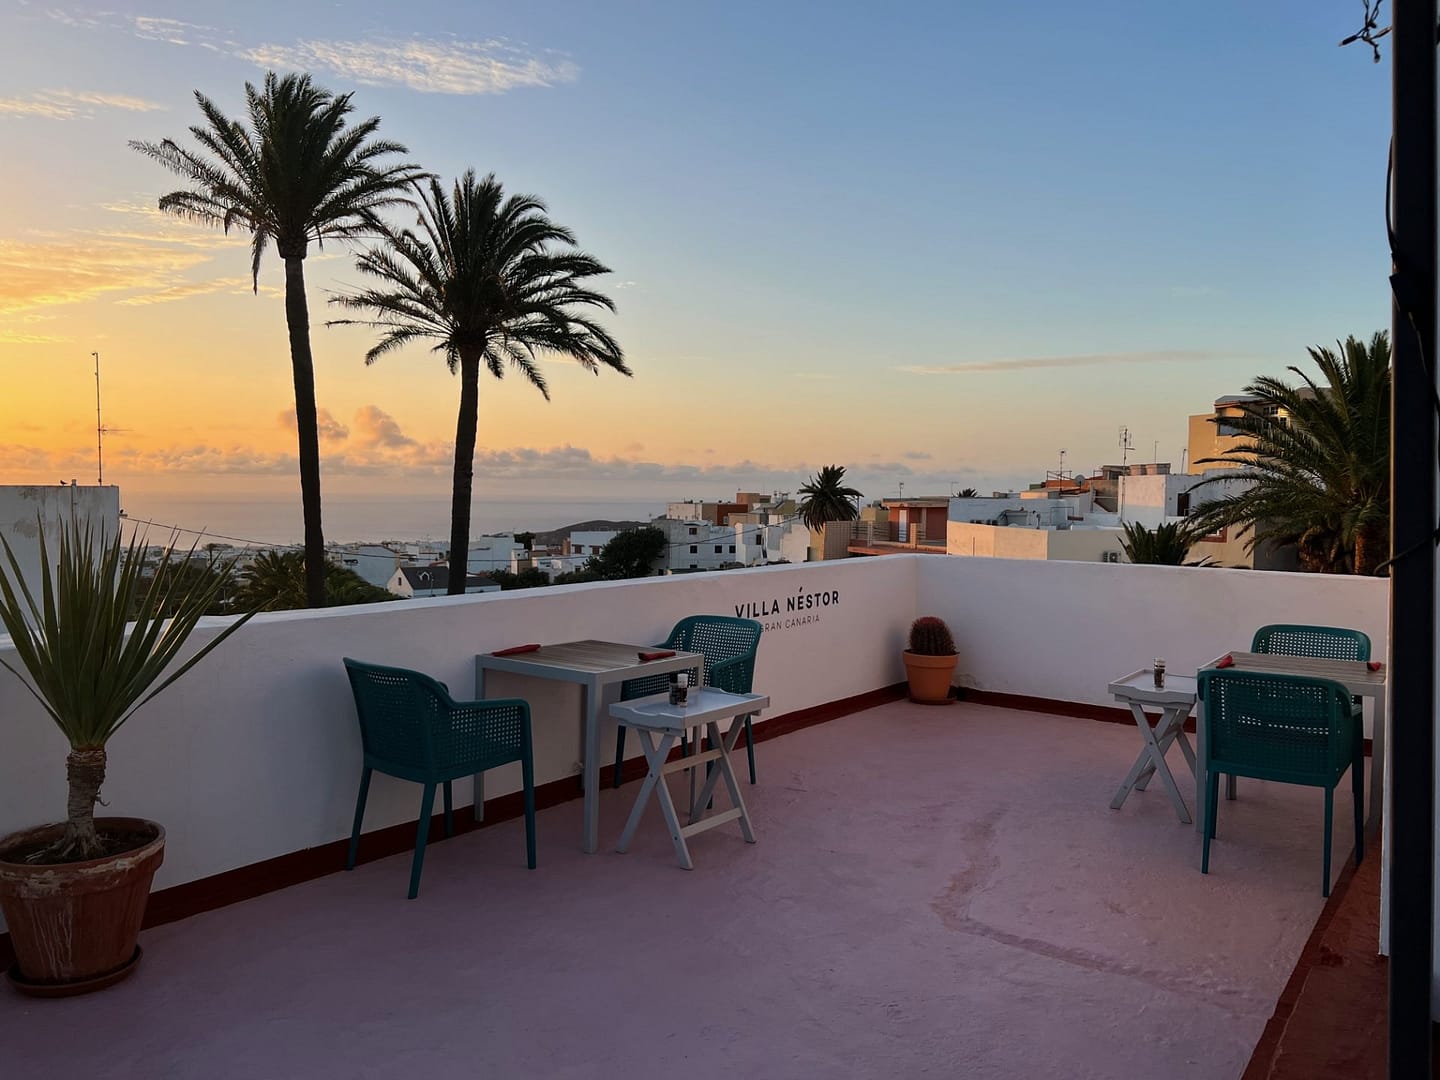 Gran Canaria hotels met uitzicht villa nestor